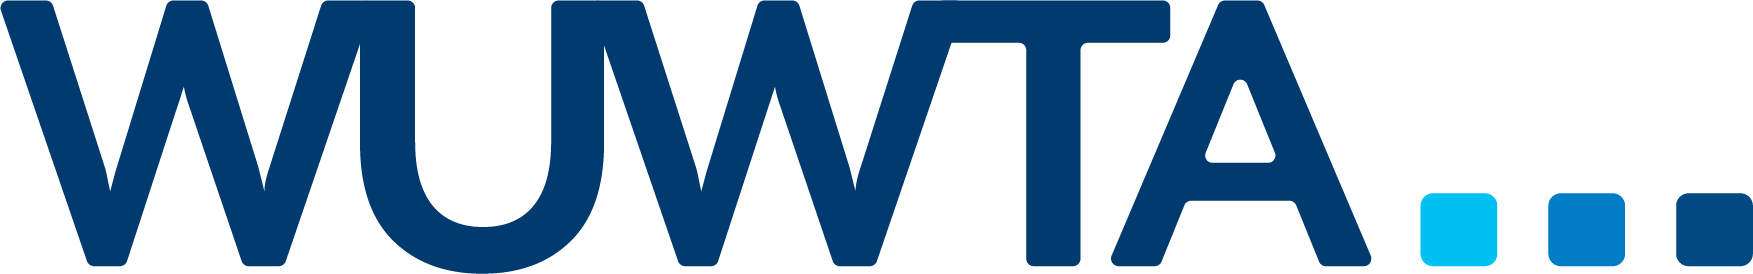 WUWTA logo